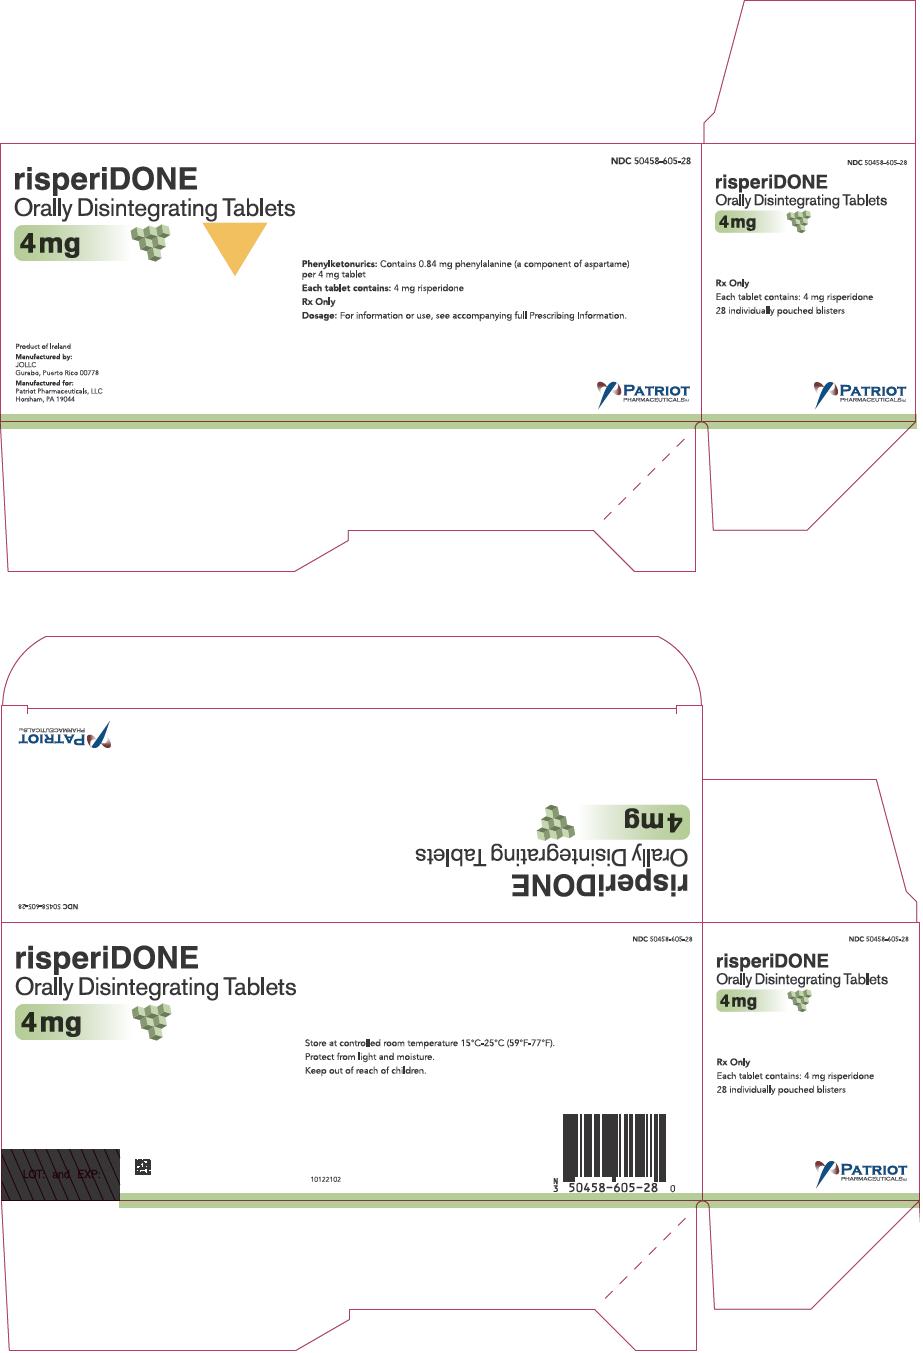 PRINCIPAL DISPLAY PANEL -  4 mg Tablet Carton